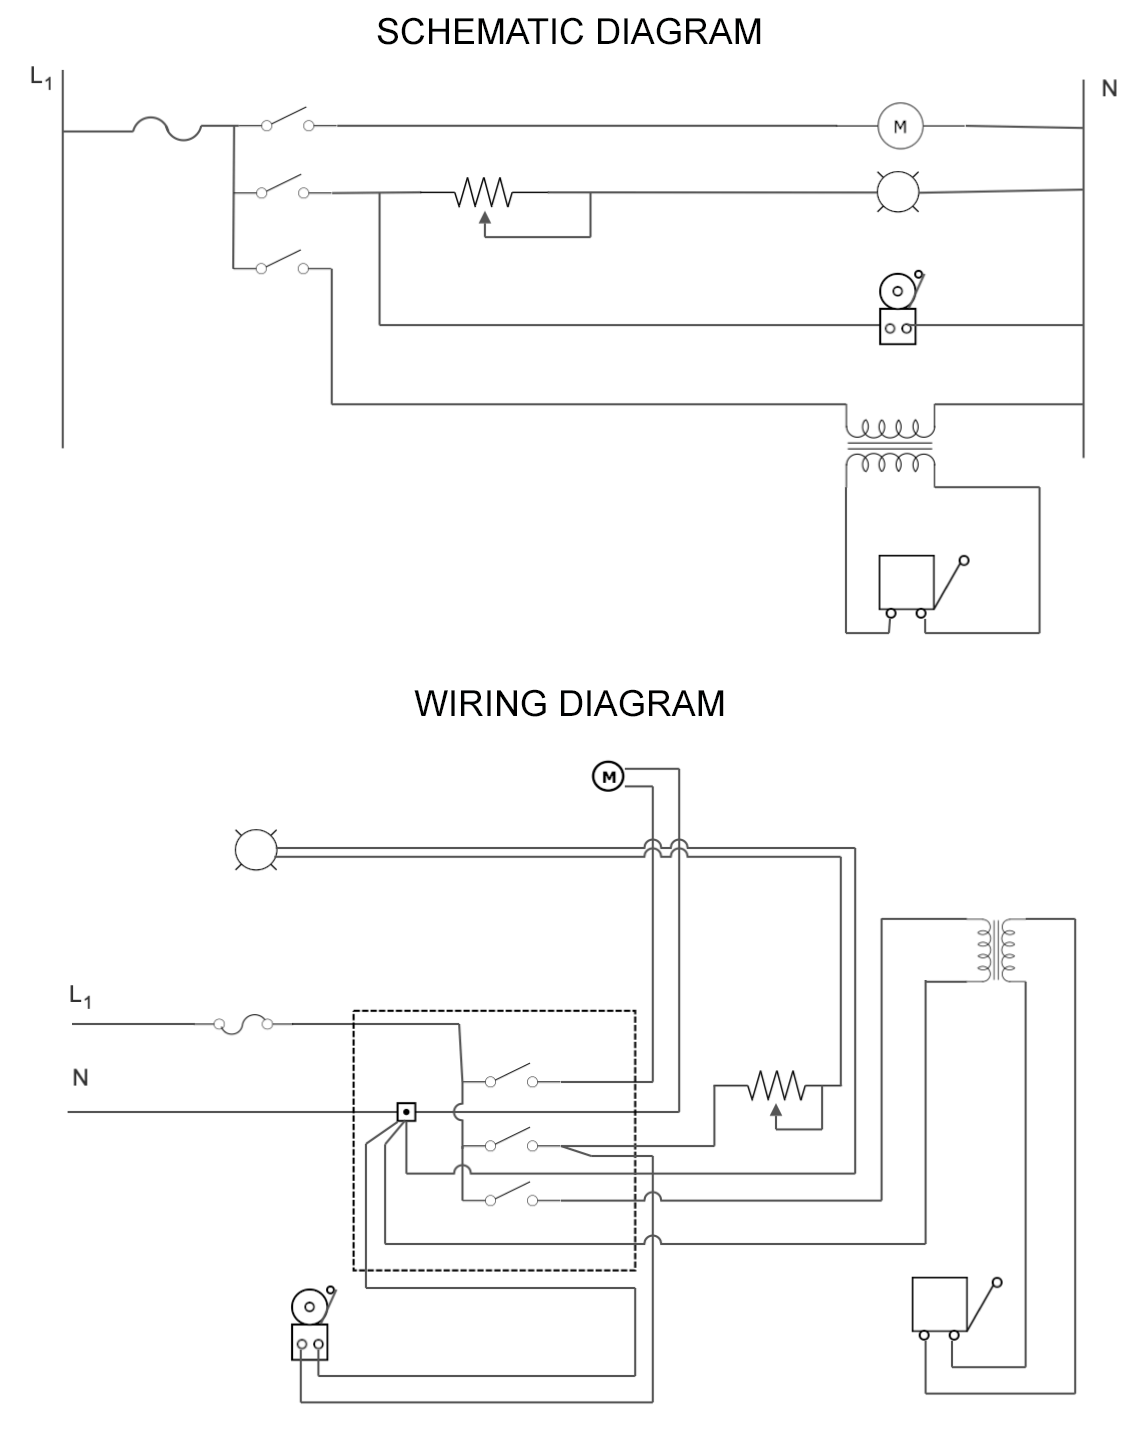 Wiring vs Schematic diagram